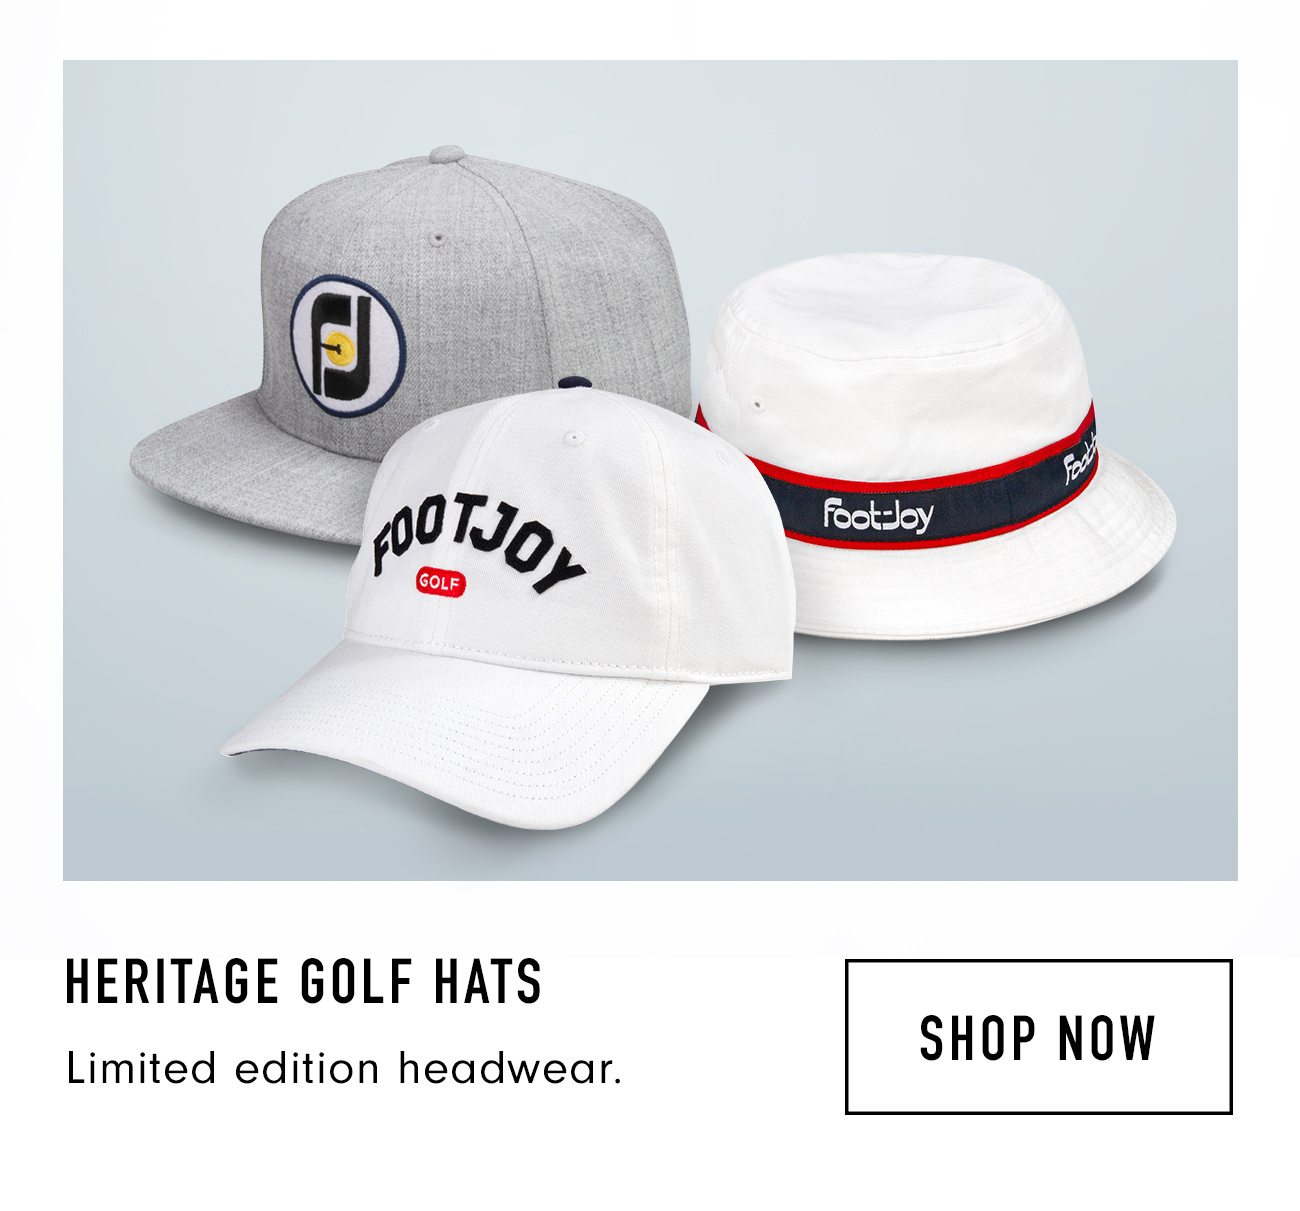 footjoy golf caps